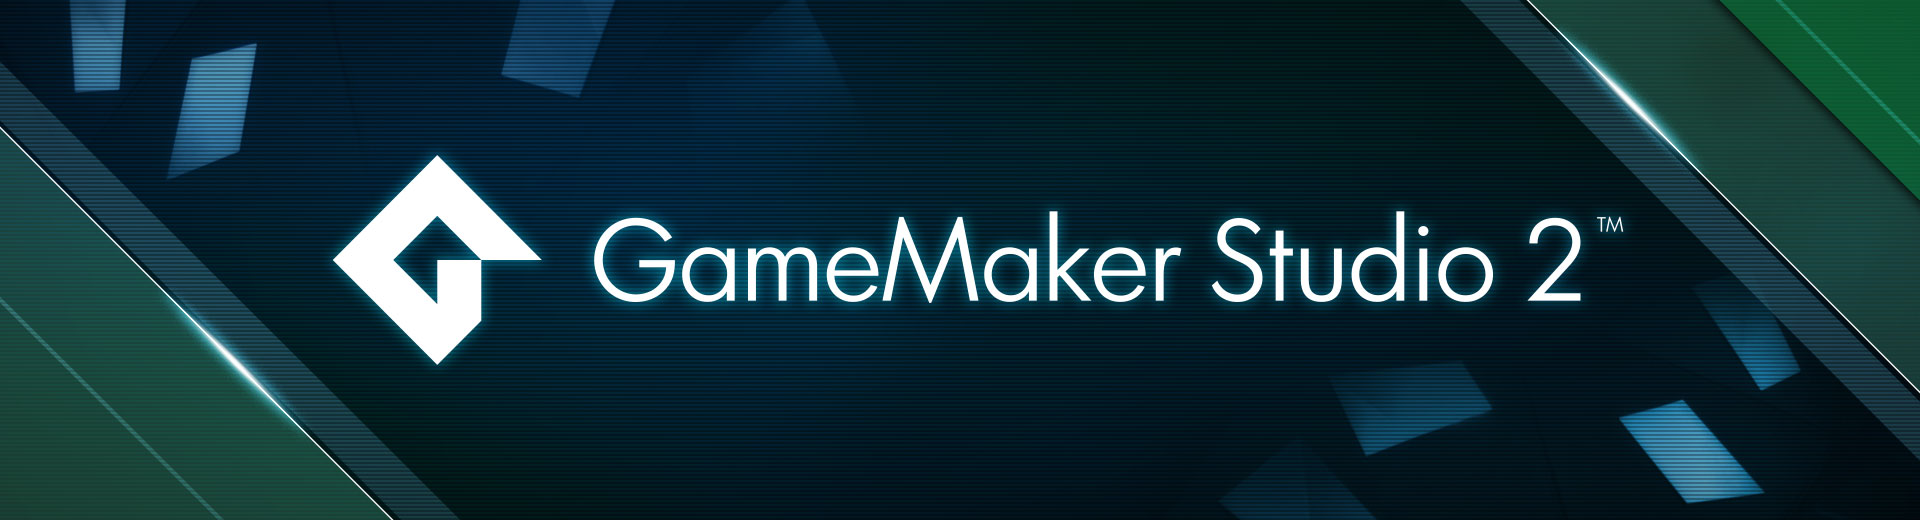 gamemaker studio 2 tutorial for mac